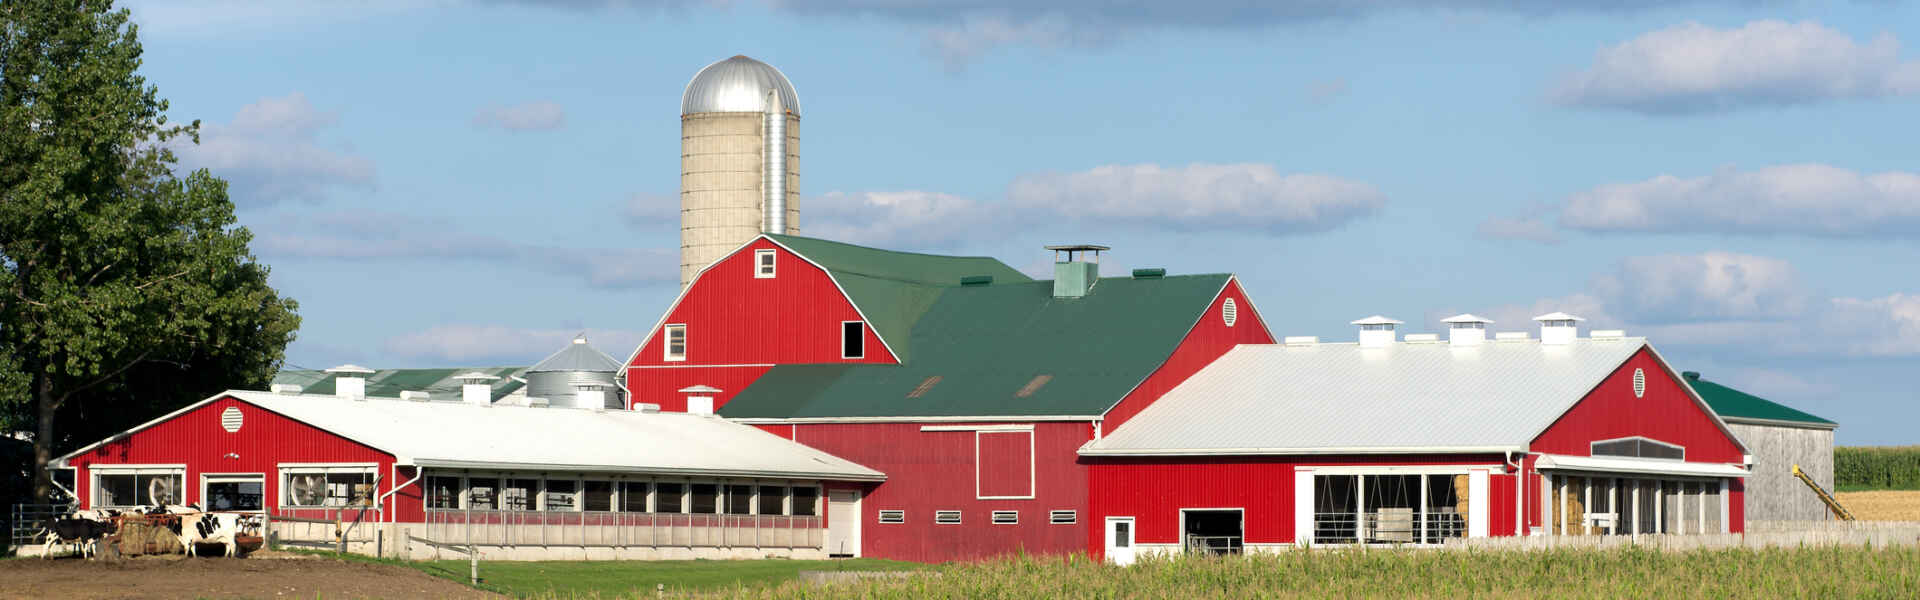 red barn across a field